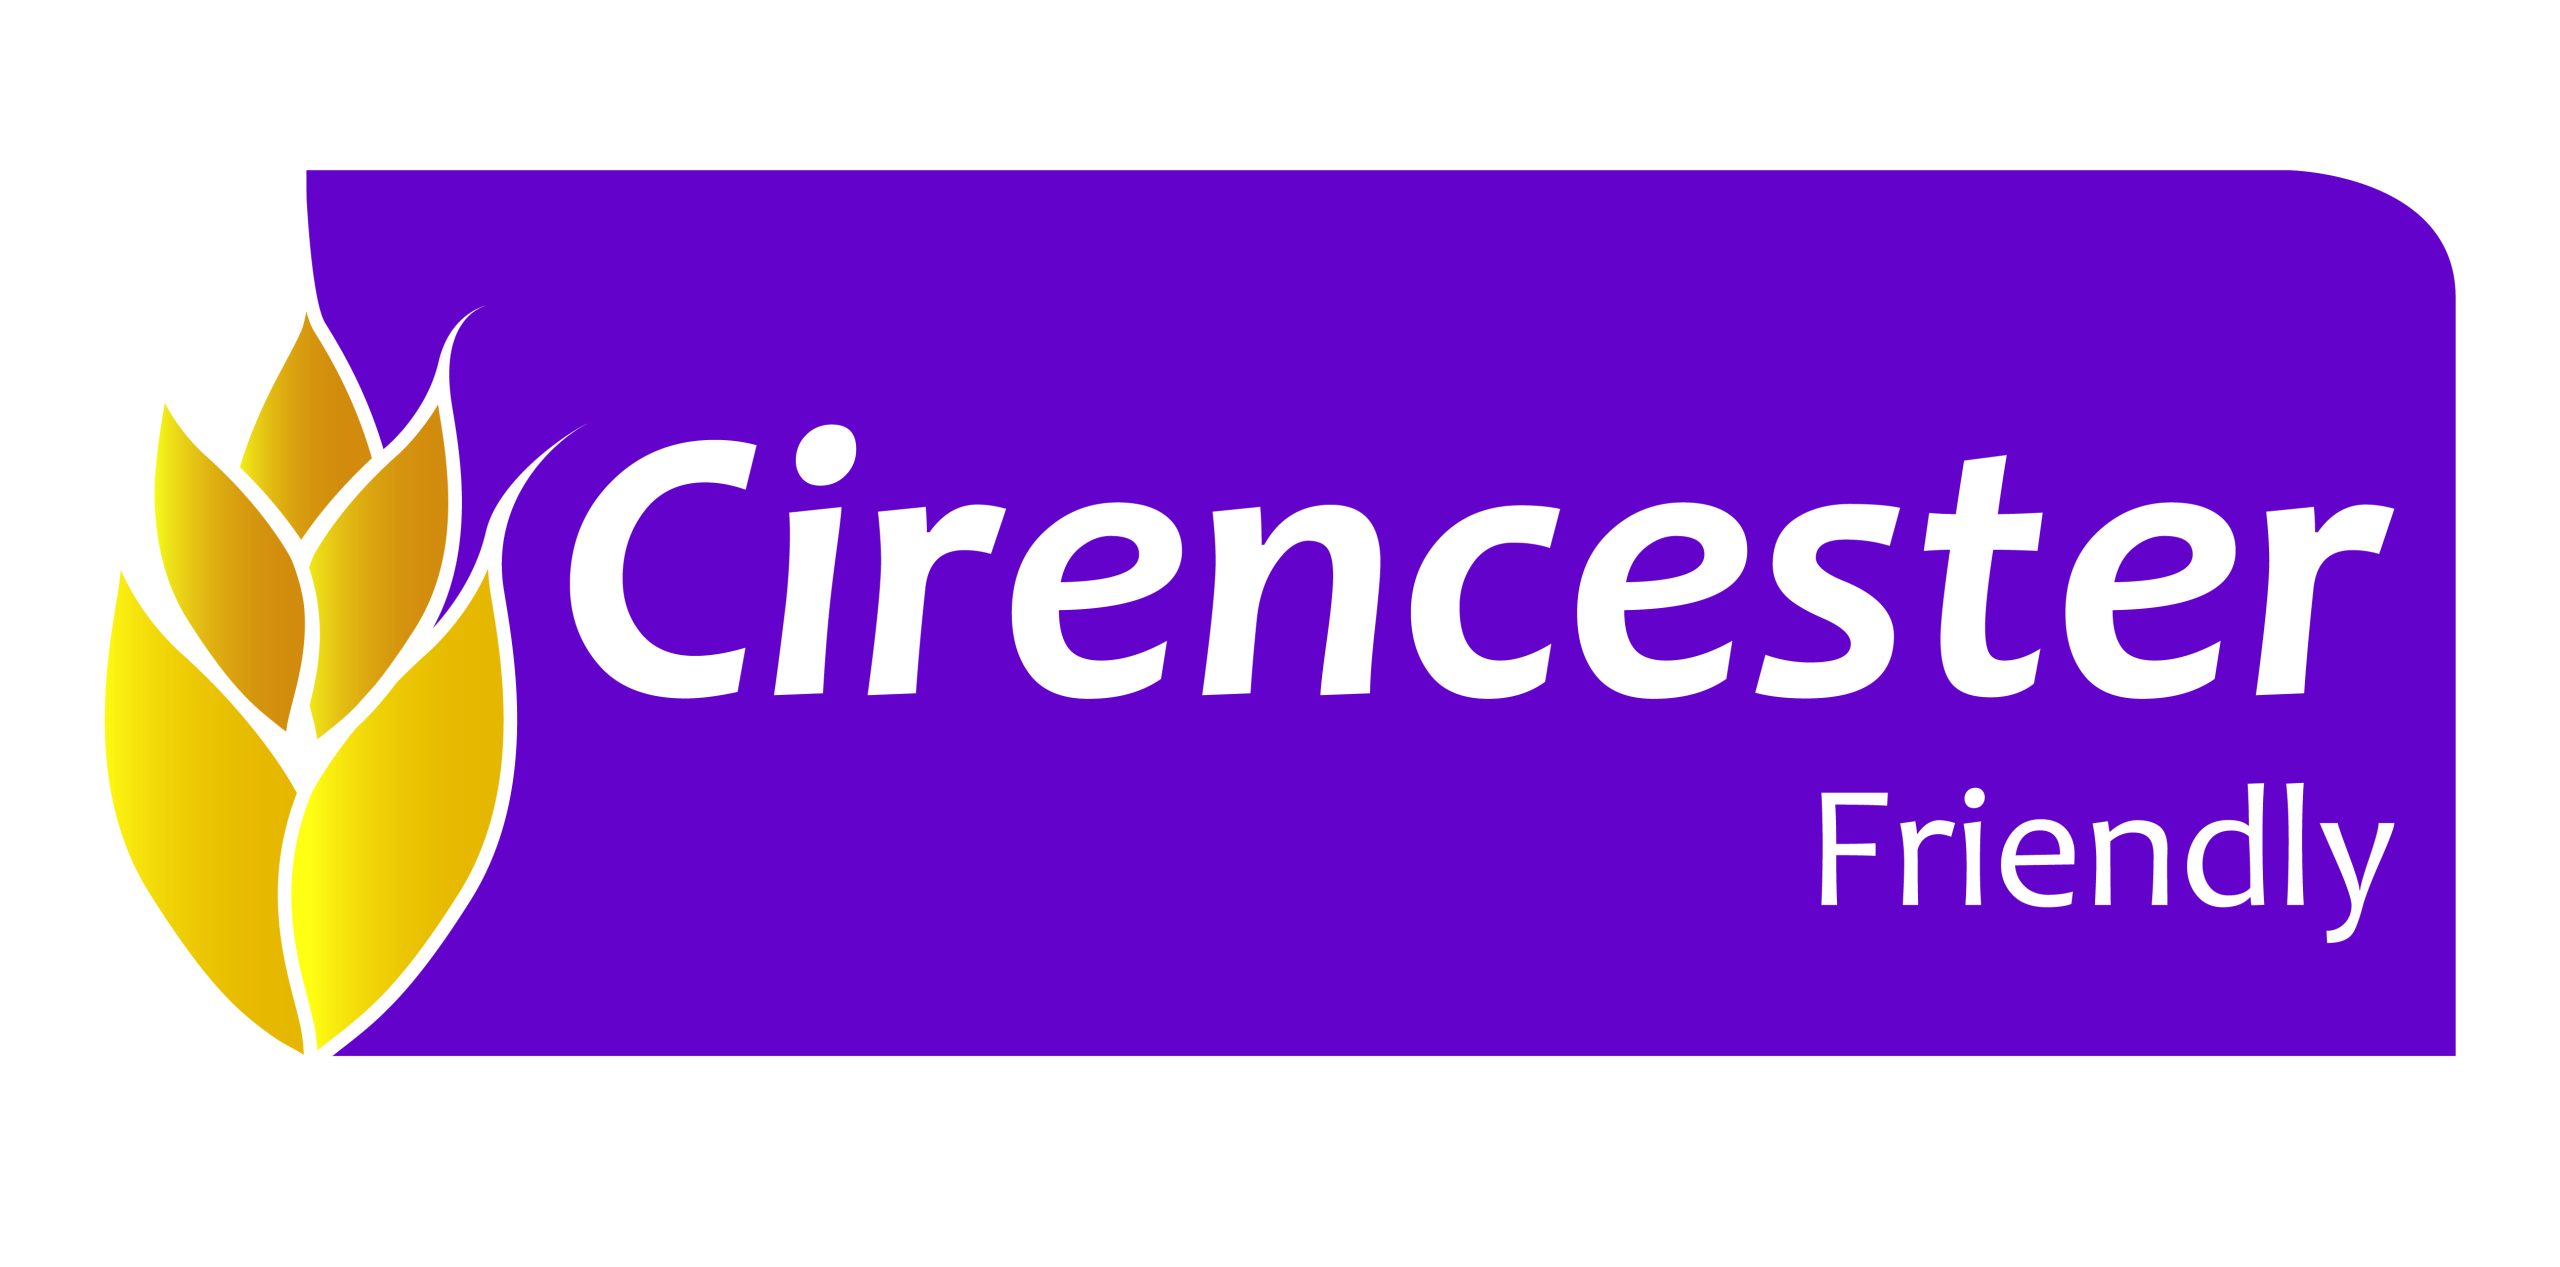 Cirencester logo